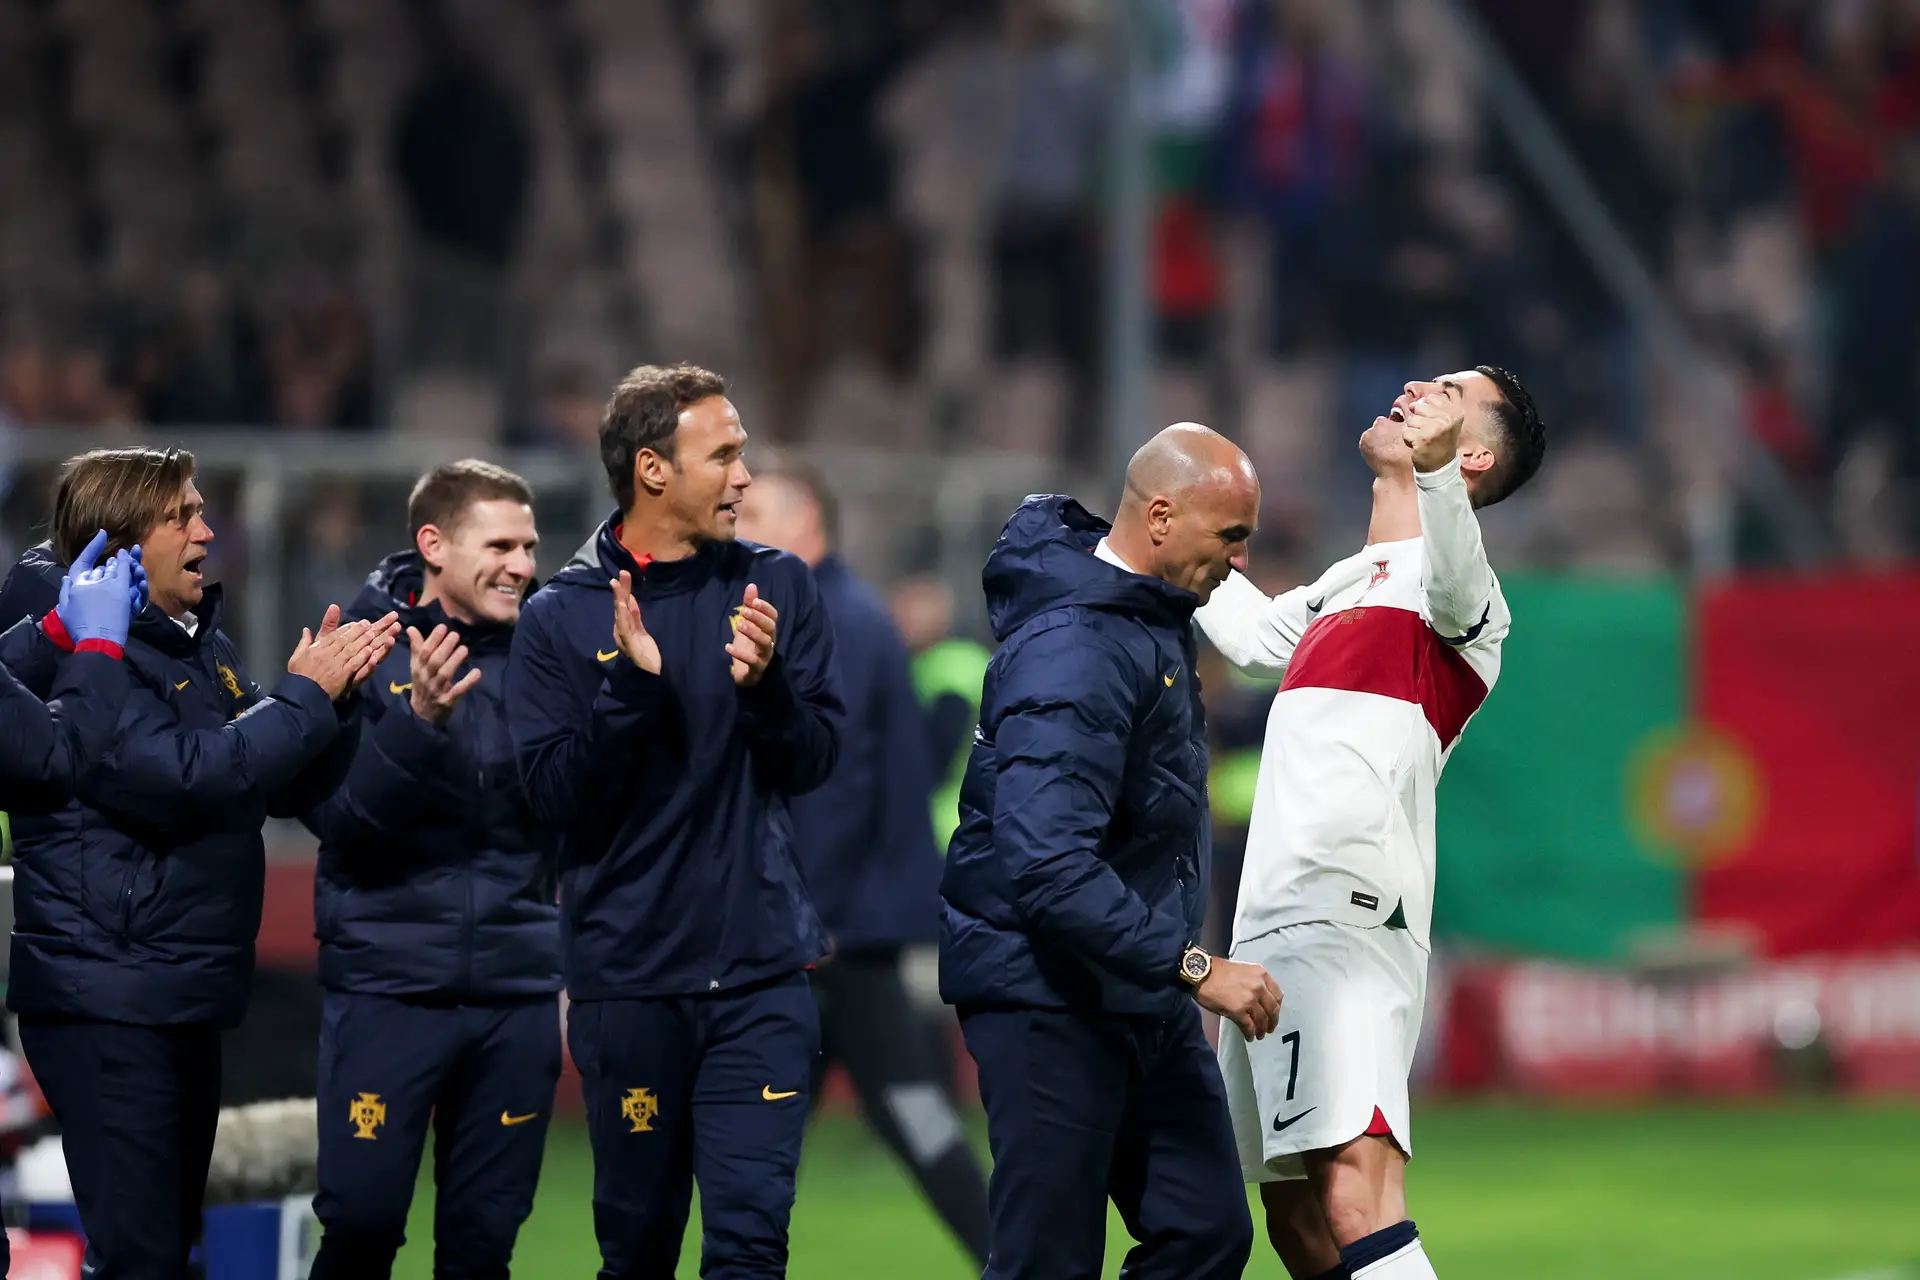 Portugal estreia-se com triunfo no Europeu de sub-19 - SIC Notícias